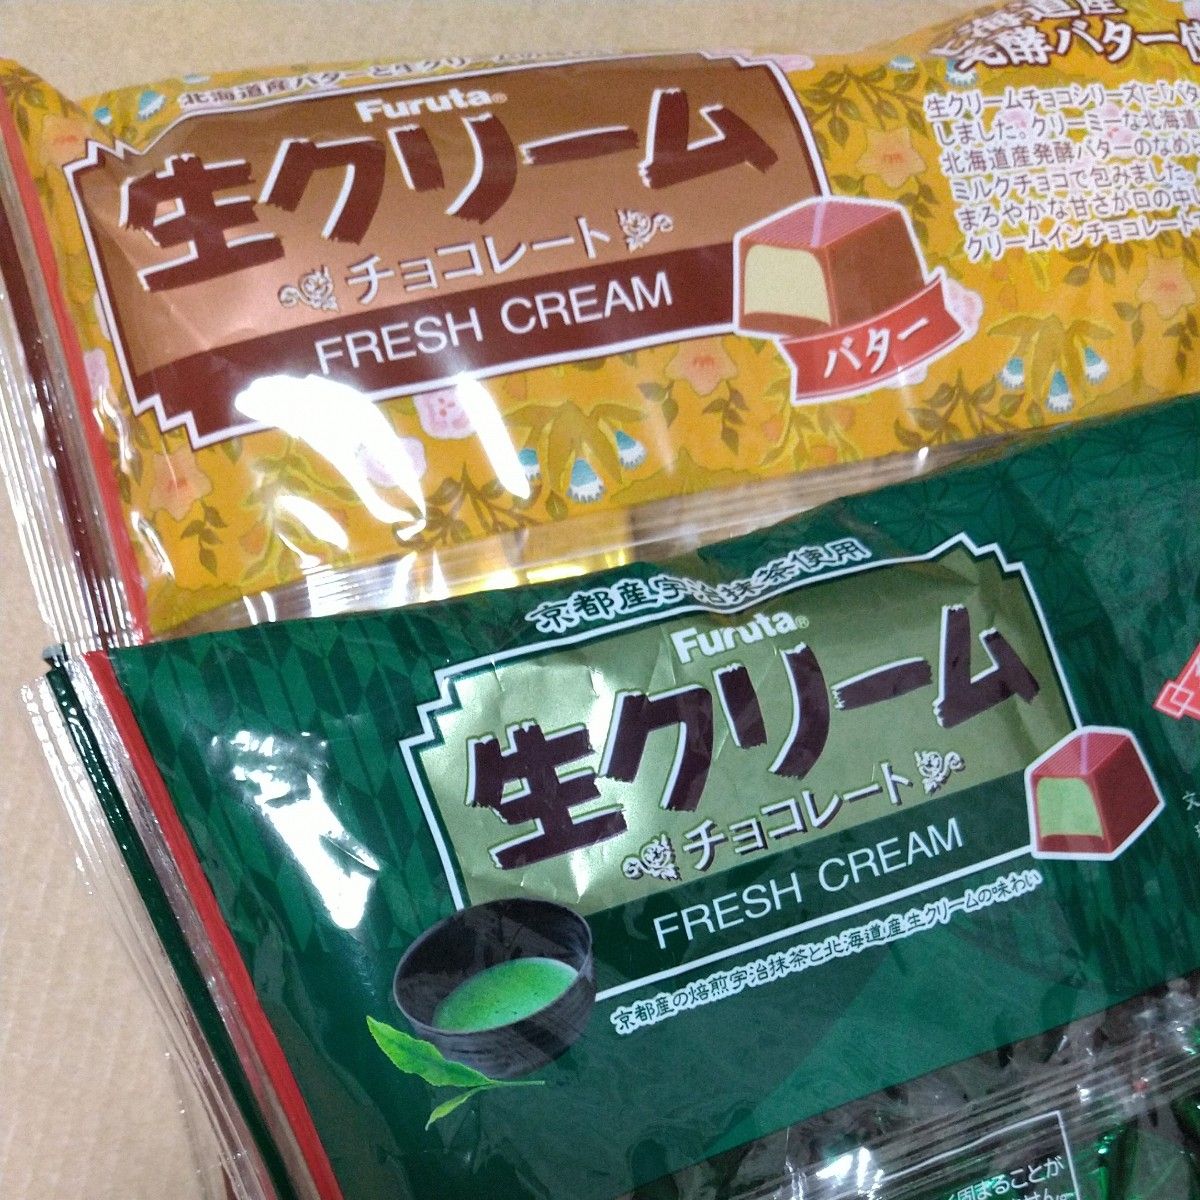 人気セット フルタ製菓 生クリームチョコレート  バター味 抹茶味 発酵バター 北川半兵衛商店